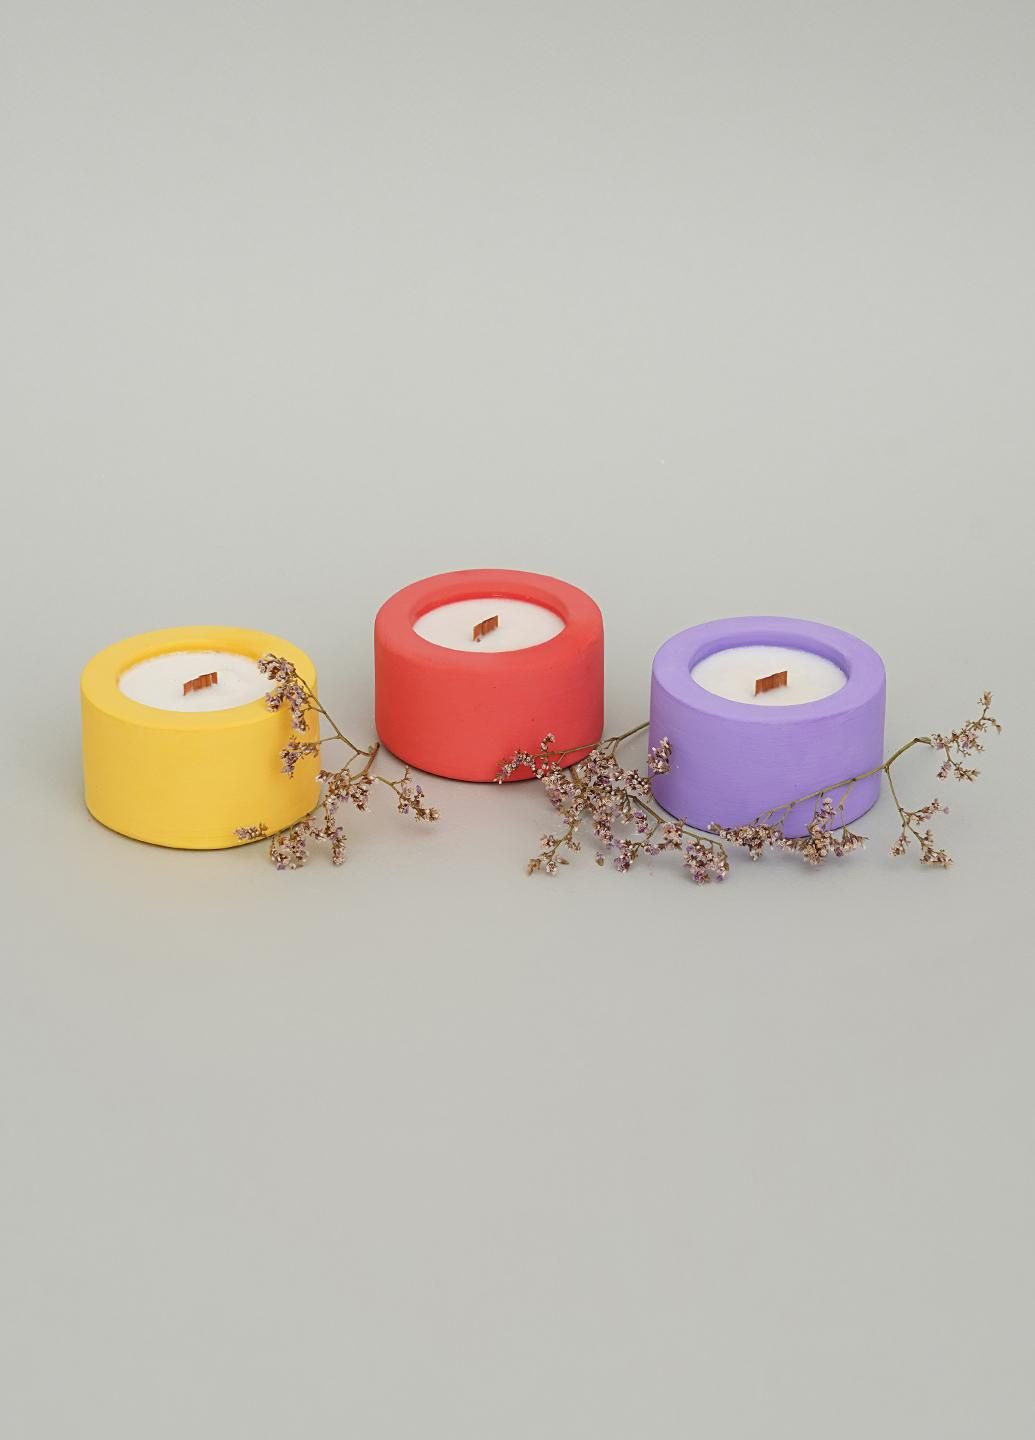 Подарунковий набір ЕКО свічок, аромат Полуниця-базилік Svich Shop 3 (282720082)